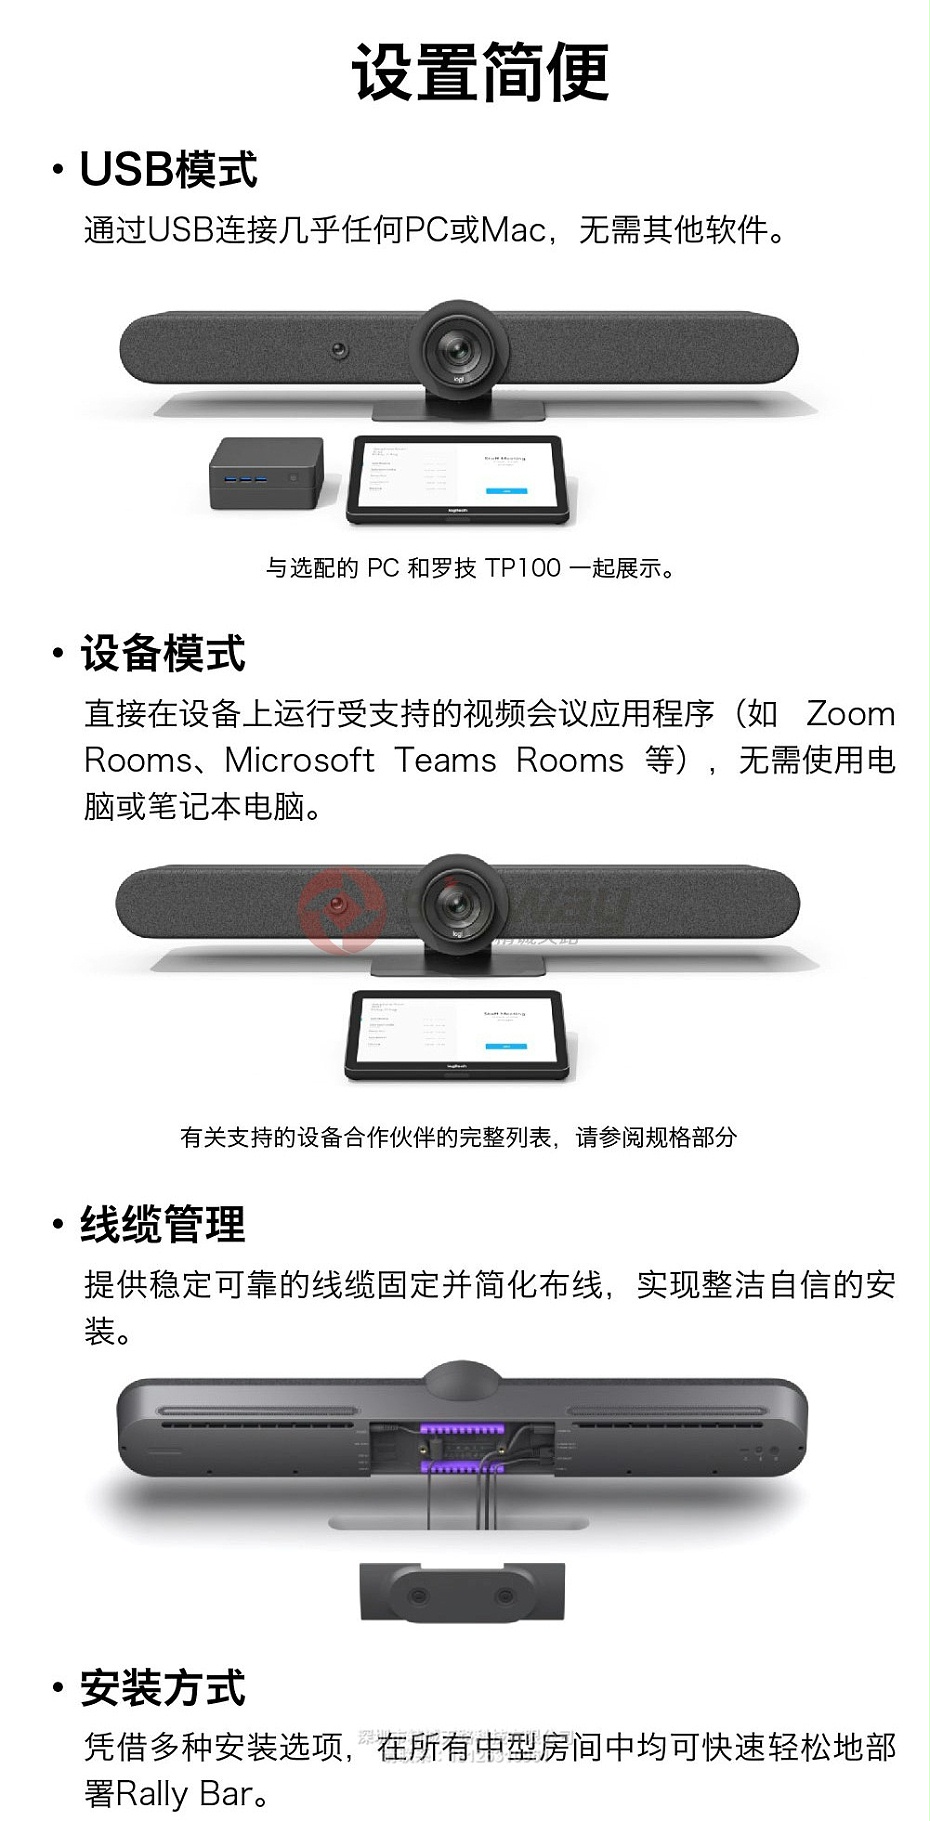 2、罗技CC5500e适用于中型房间的一体式视频会议系统-设置简便USB模式、设备模式